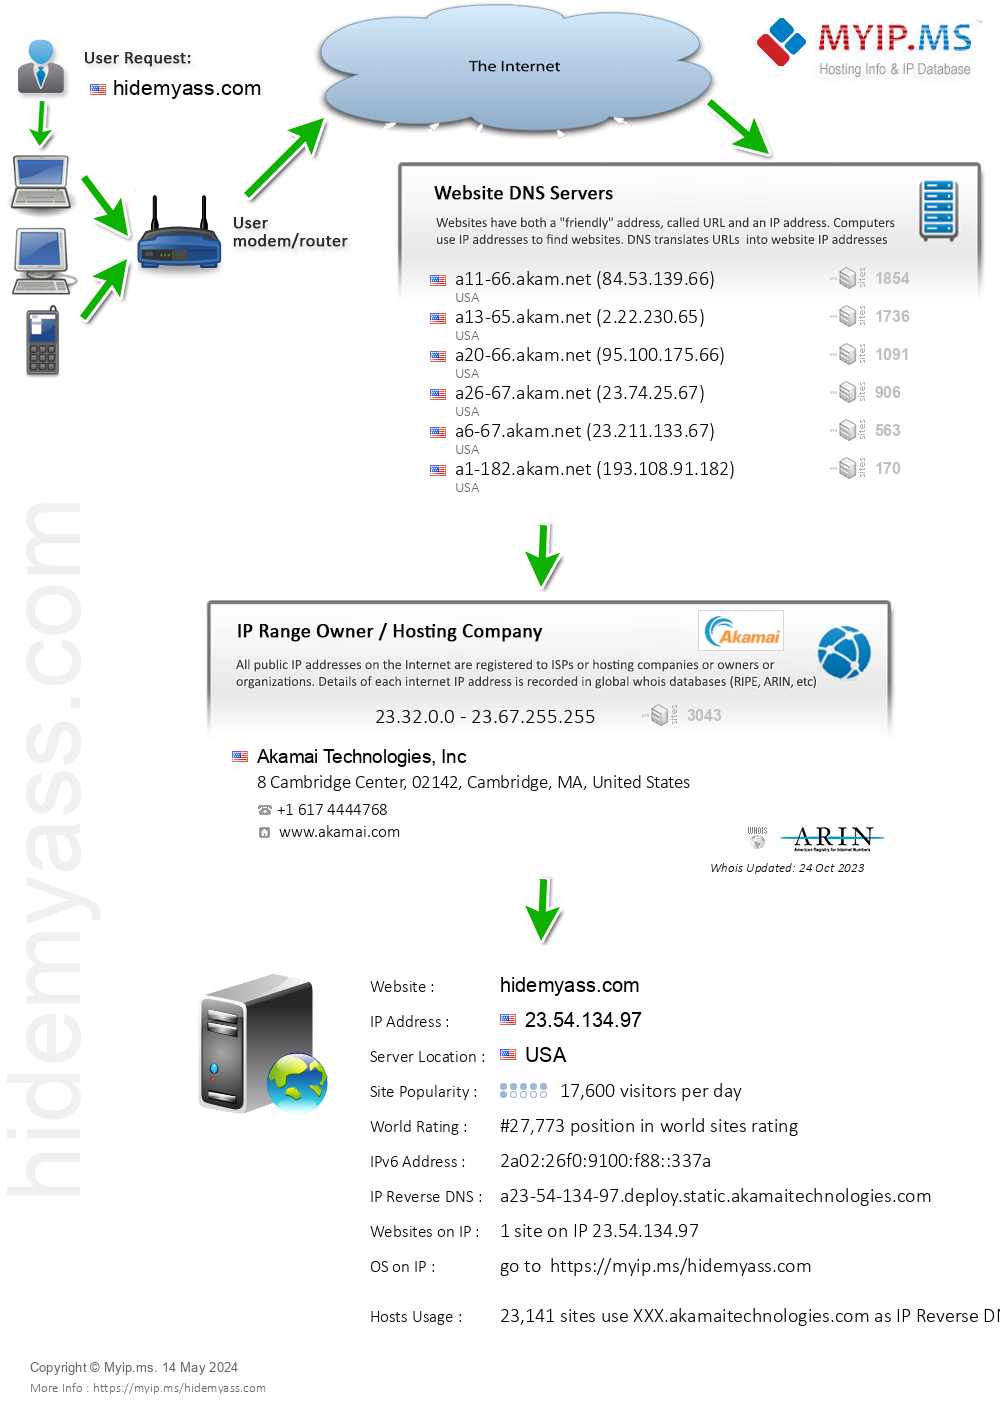 Hidemyass.com - Website Hosting Visual IP Diagram